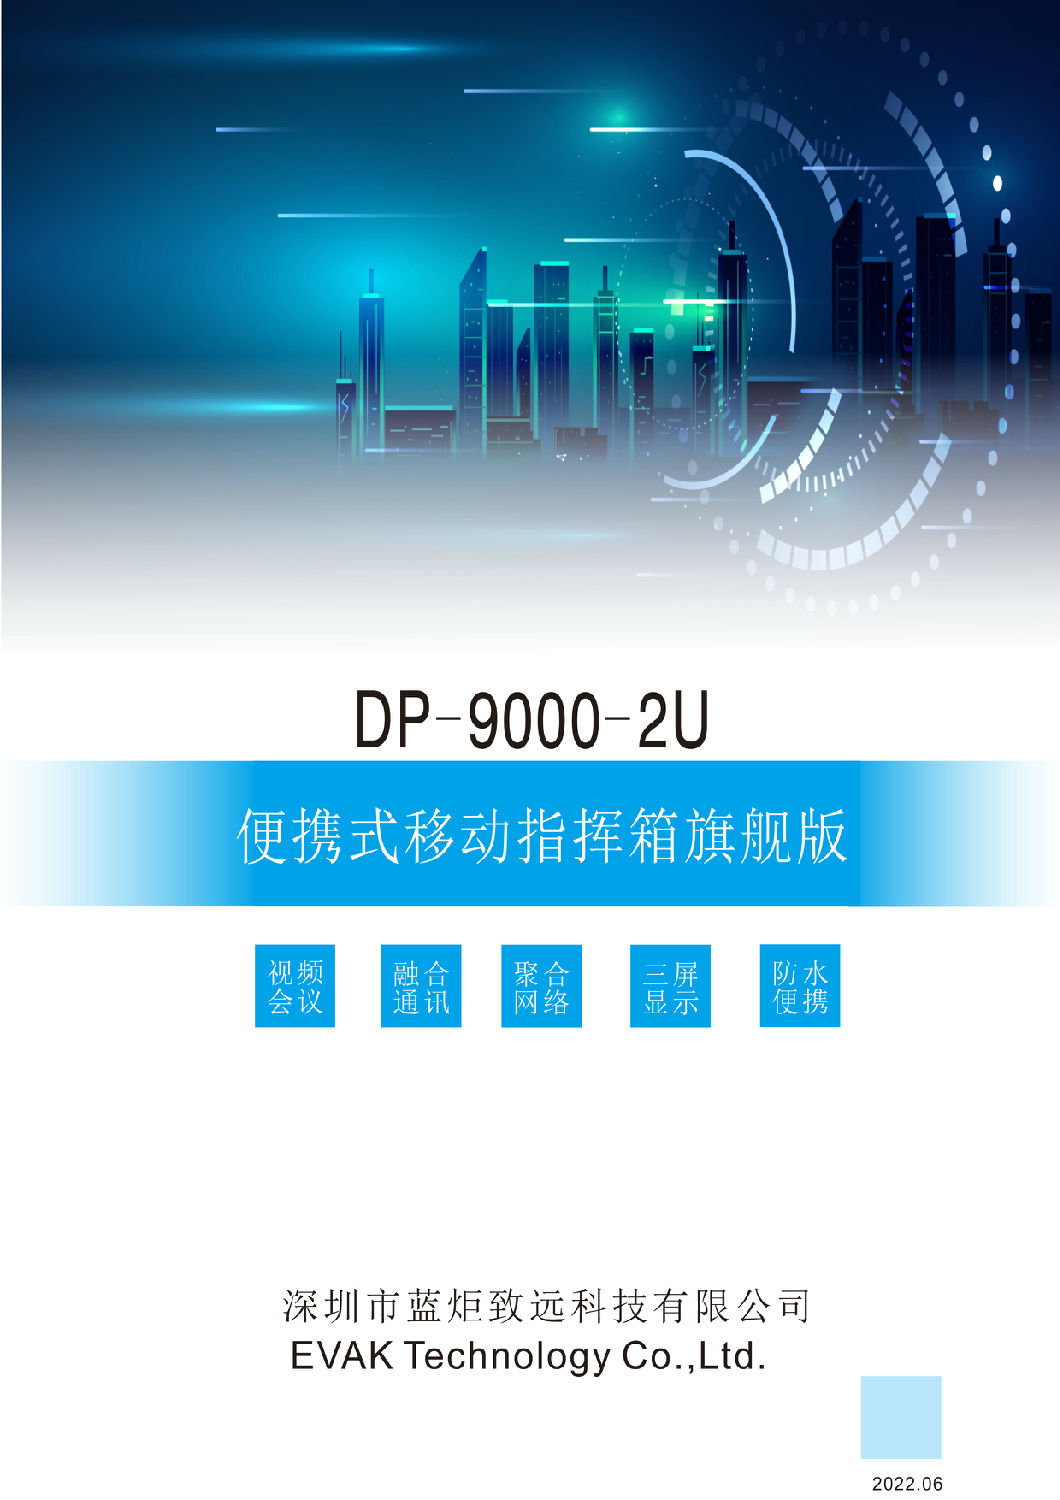 DP-9000-2U便携式移动指挥箱旗舰版（简易版）-1.jpg